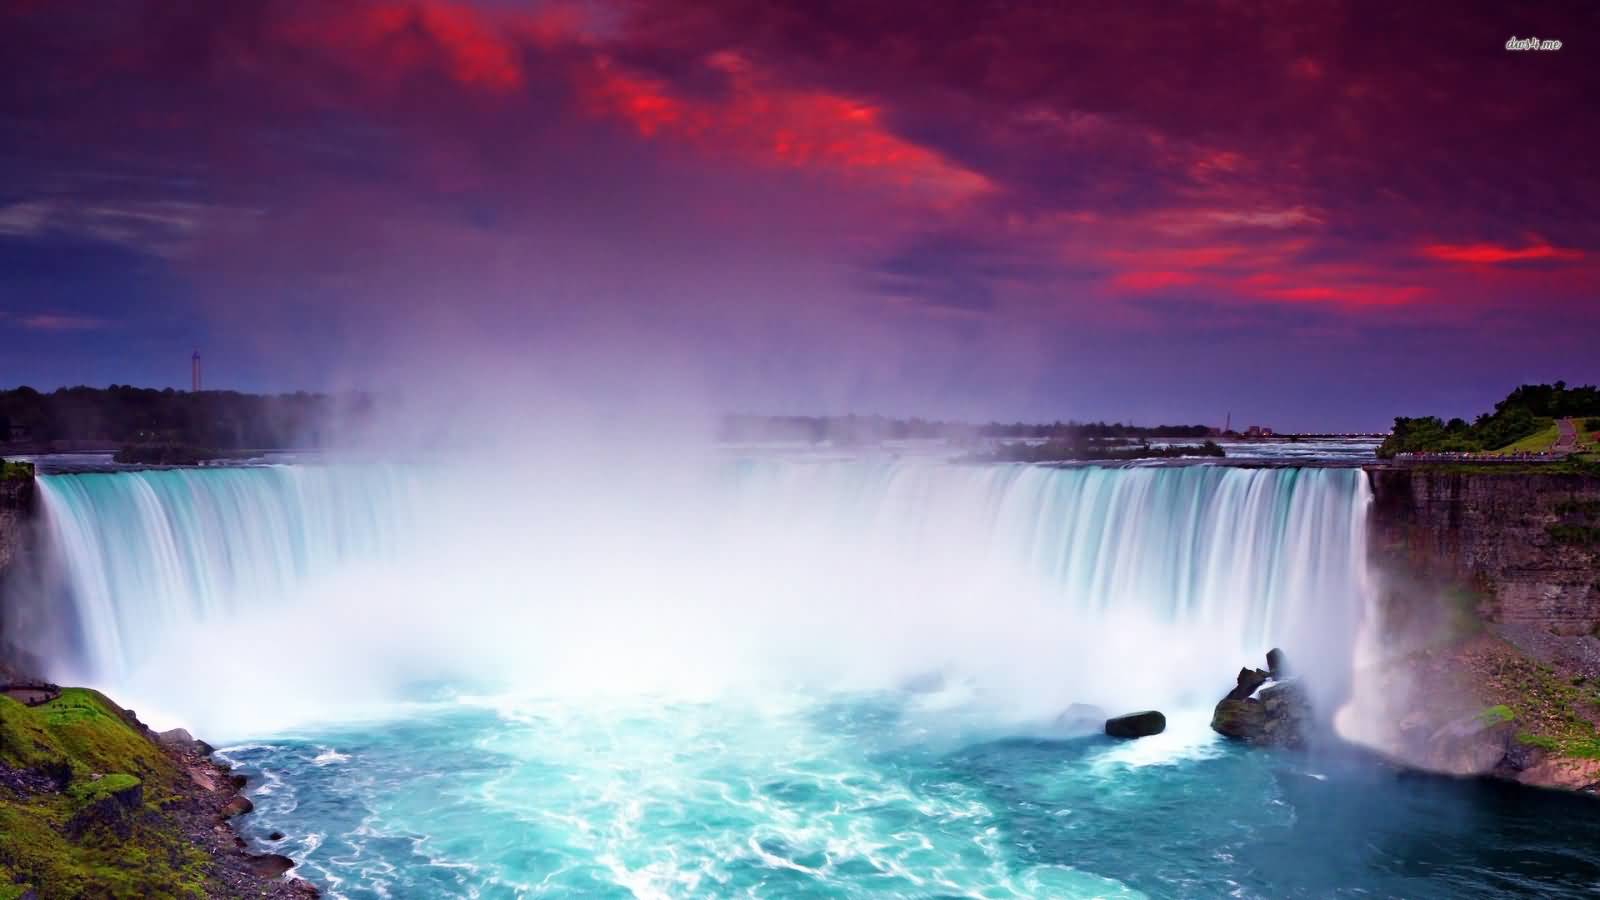 Amazing View At The Niagara Falls